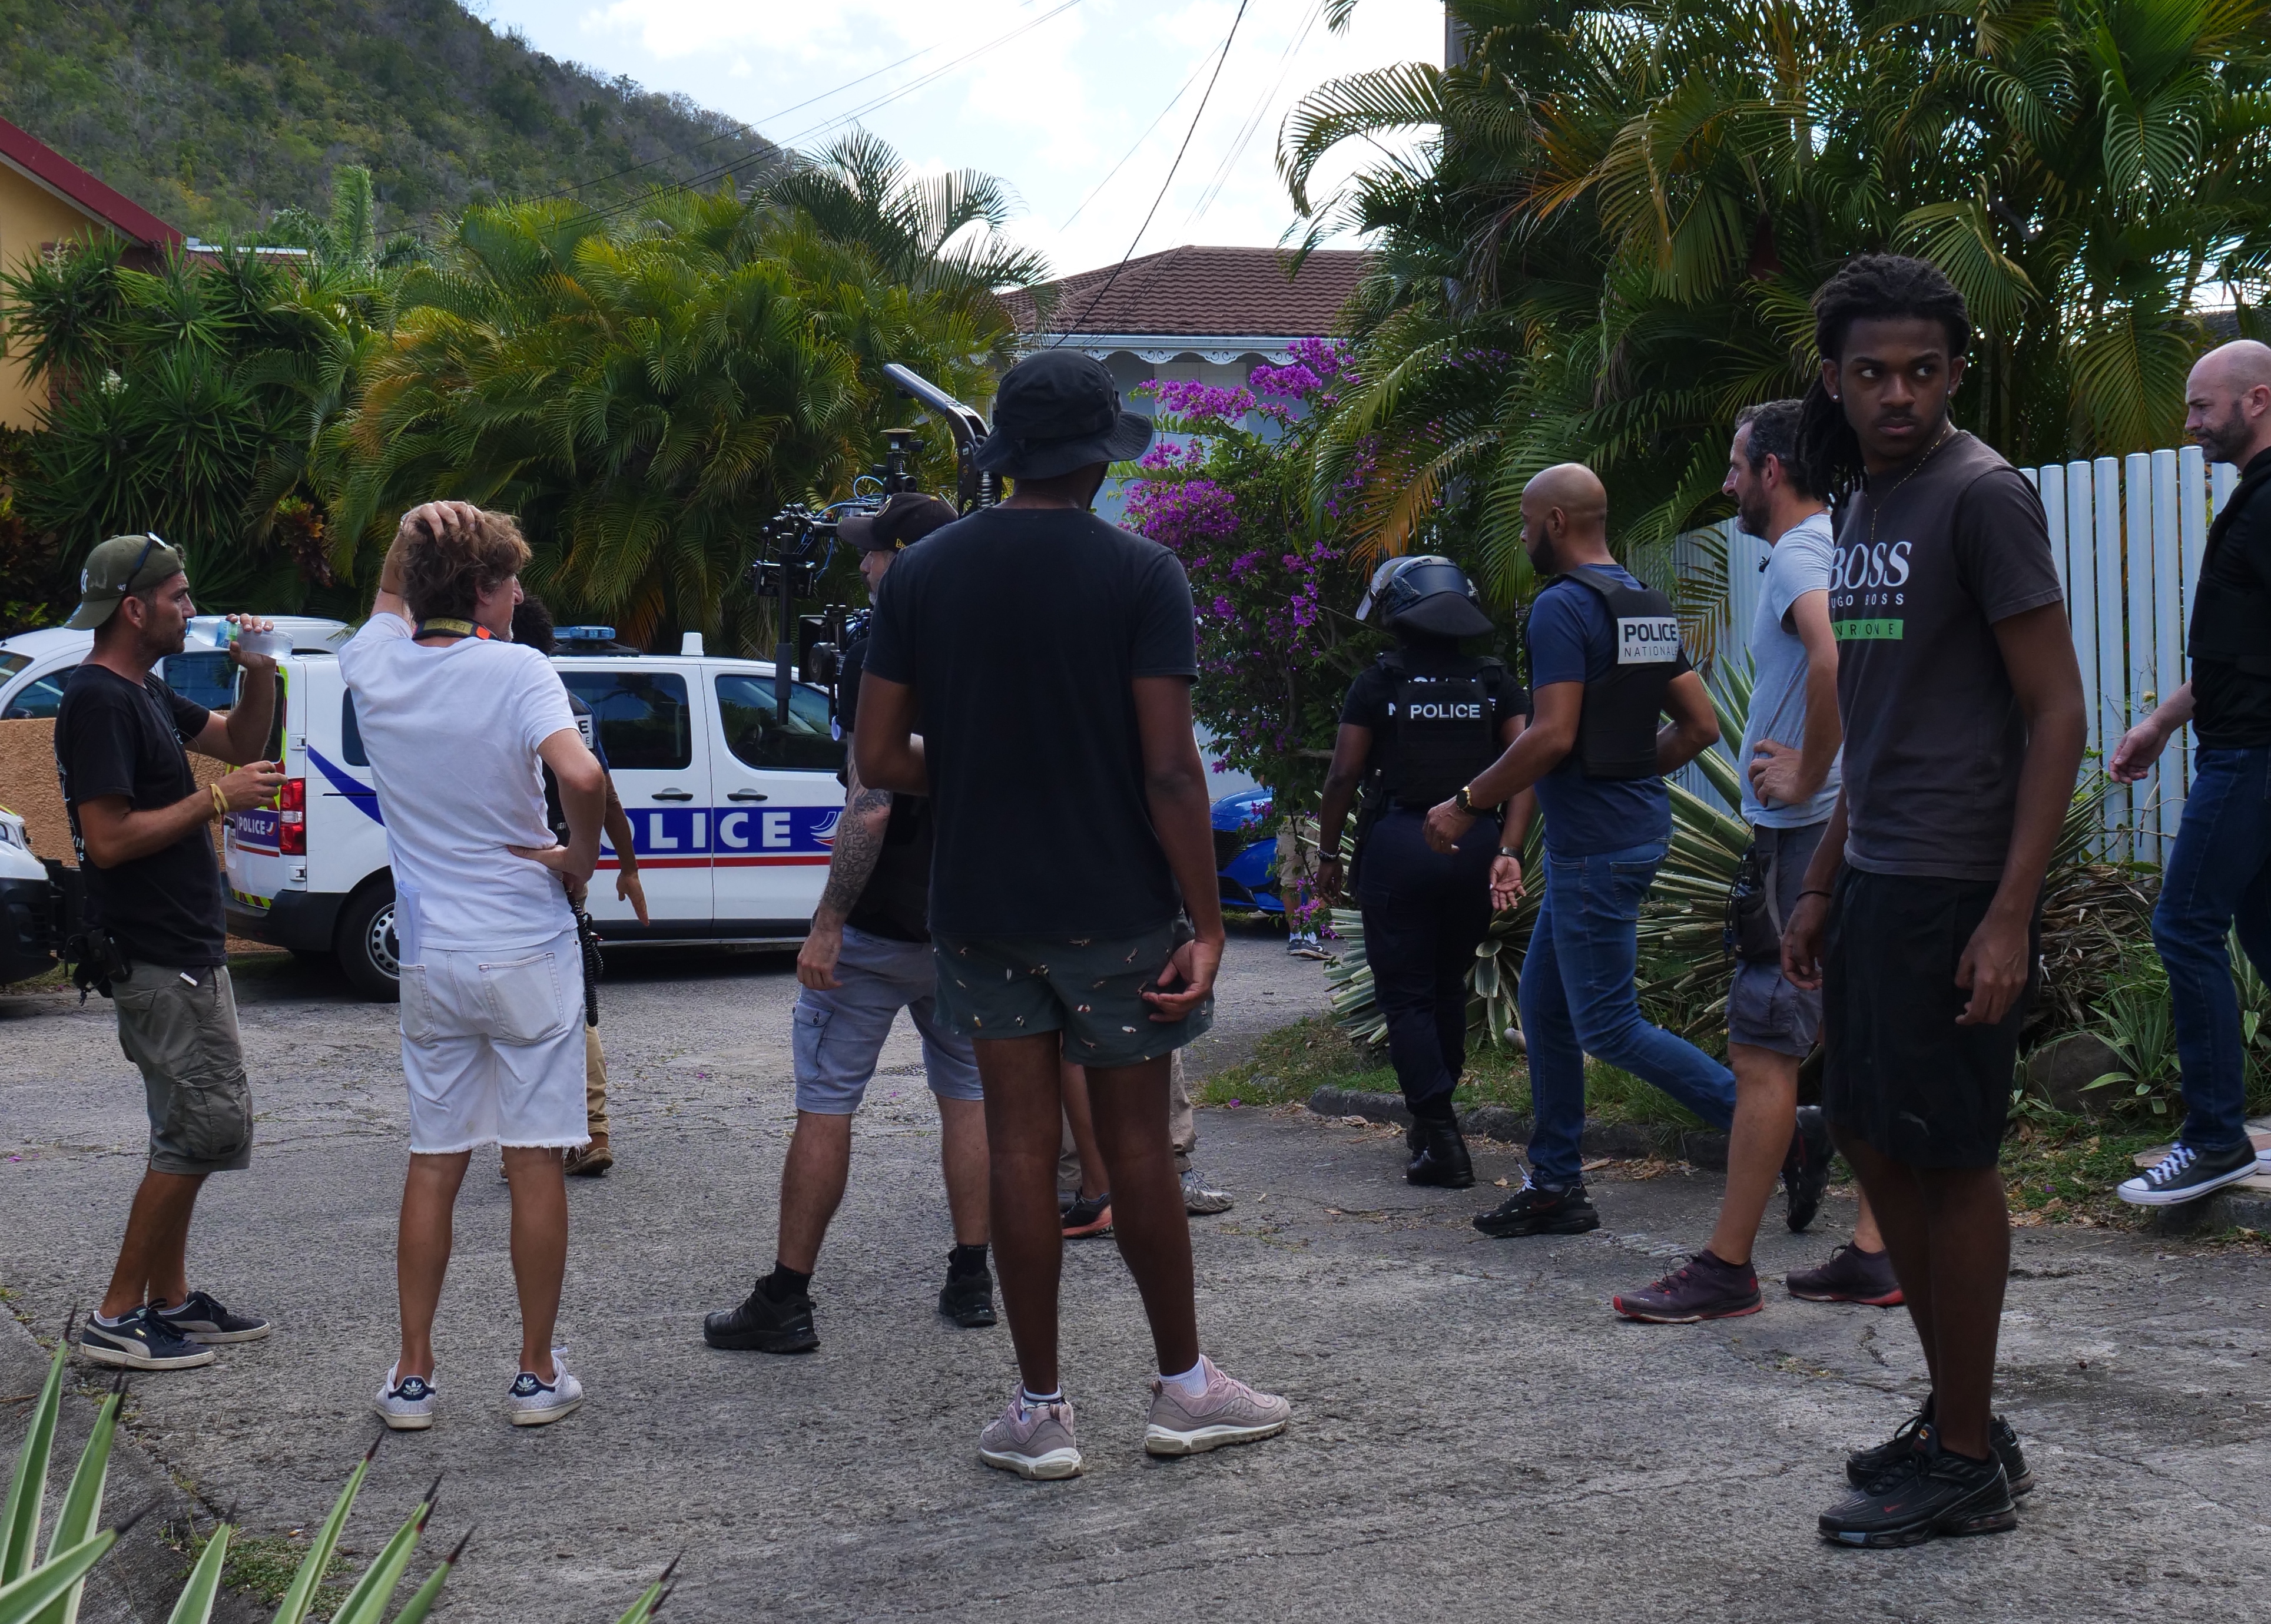     5ème tournage de Tropiques Criminels en Martinique : ce que l'on sait des retombées économiques 

